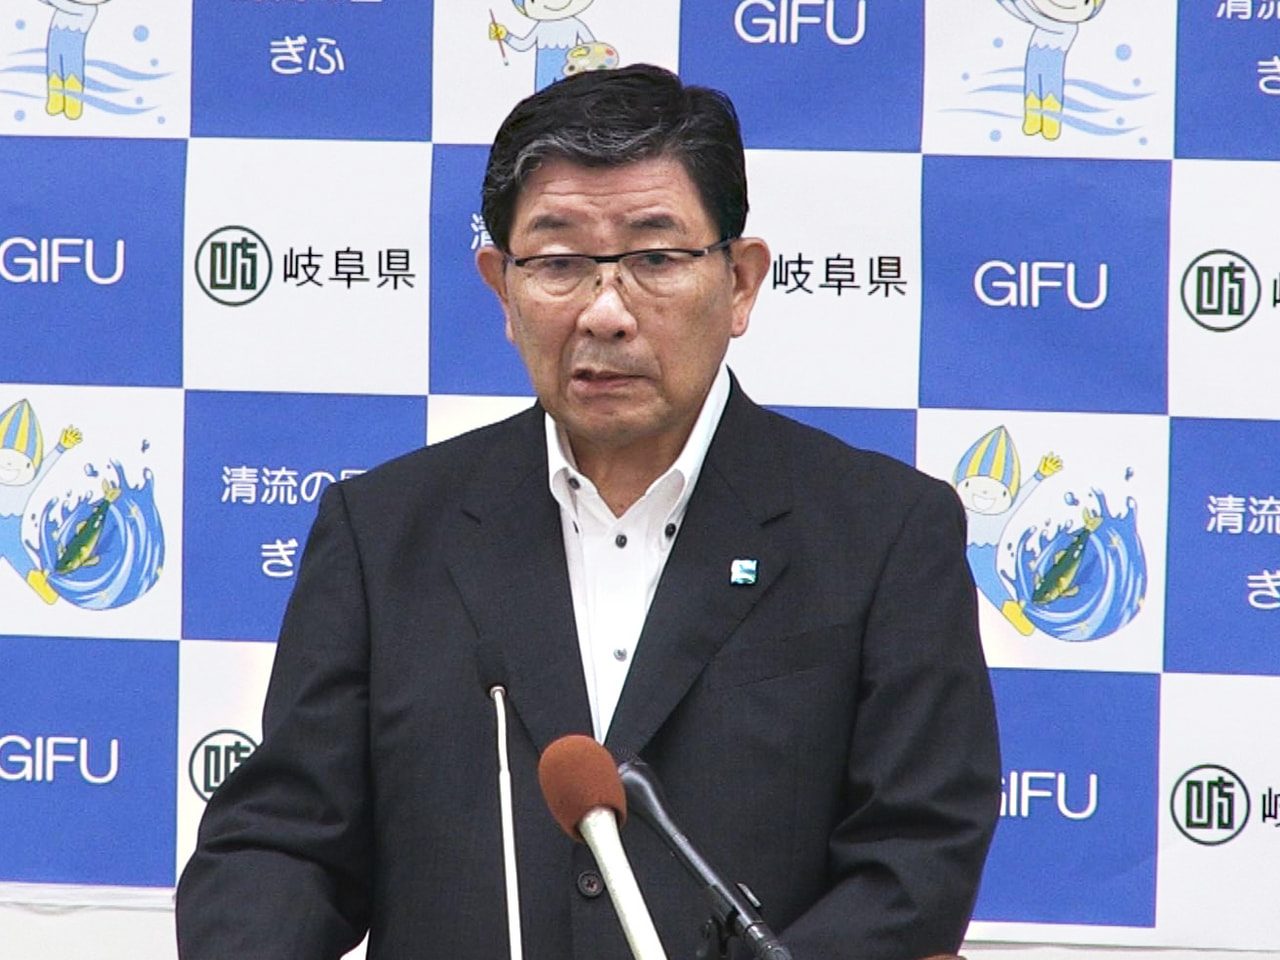 岐阜県の古田肇知事は１日、条例に基づき去年の所得や資産を公開しました。 所得の総...